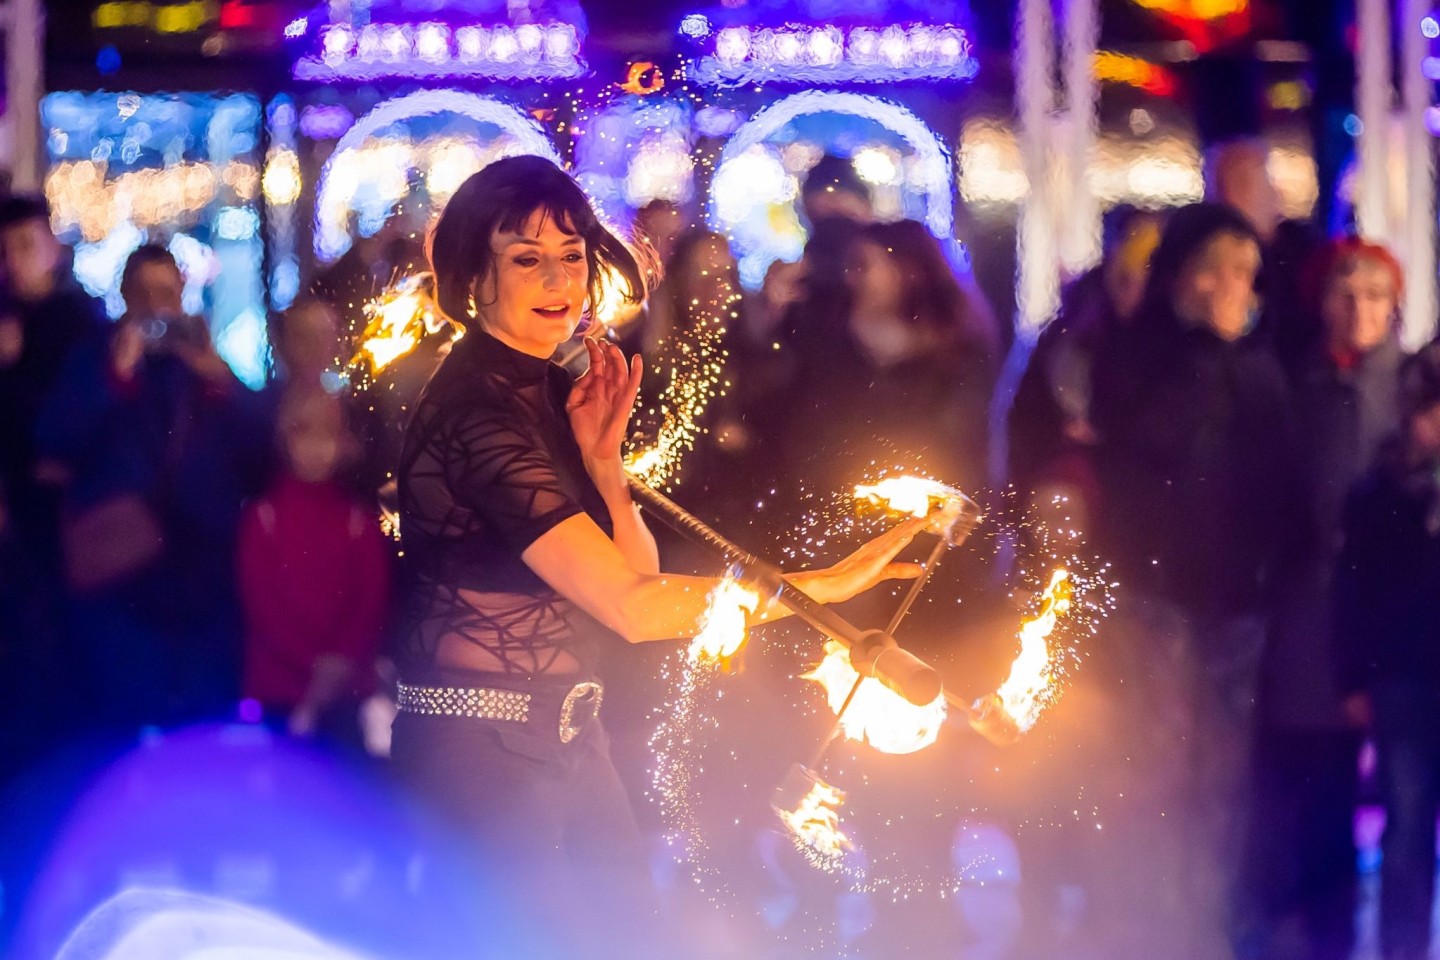 Feuerkünstlerin Nicole am Eröffnungstag beim Weihnachtsmarkt «Winterzauber» in Berlin-Lichtenberg.